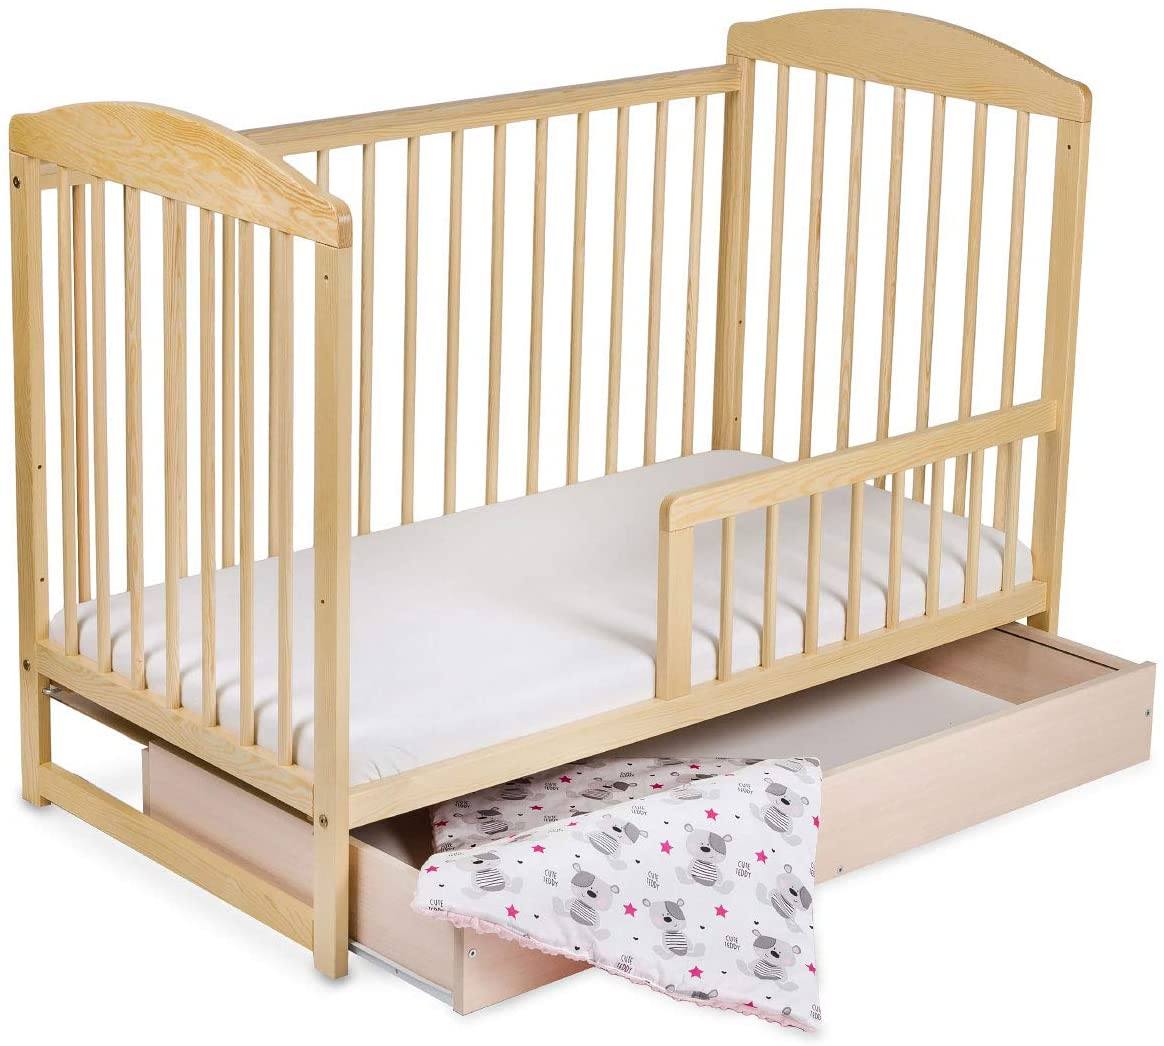 Comment choisir un lit bébé